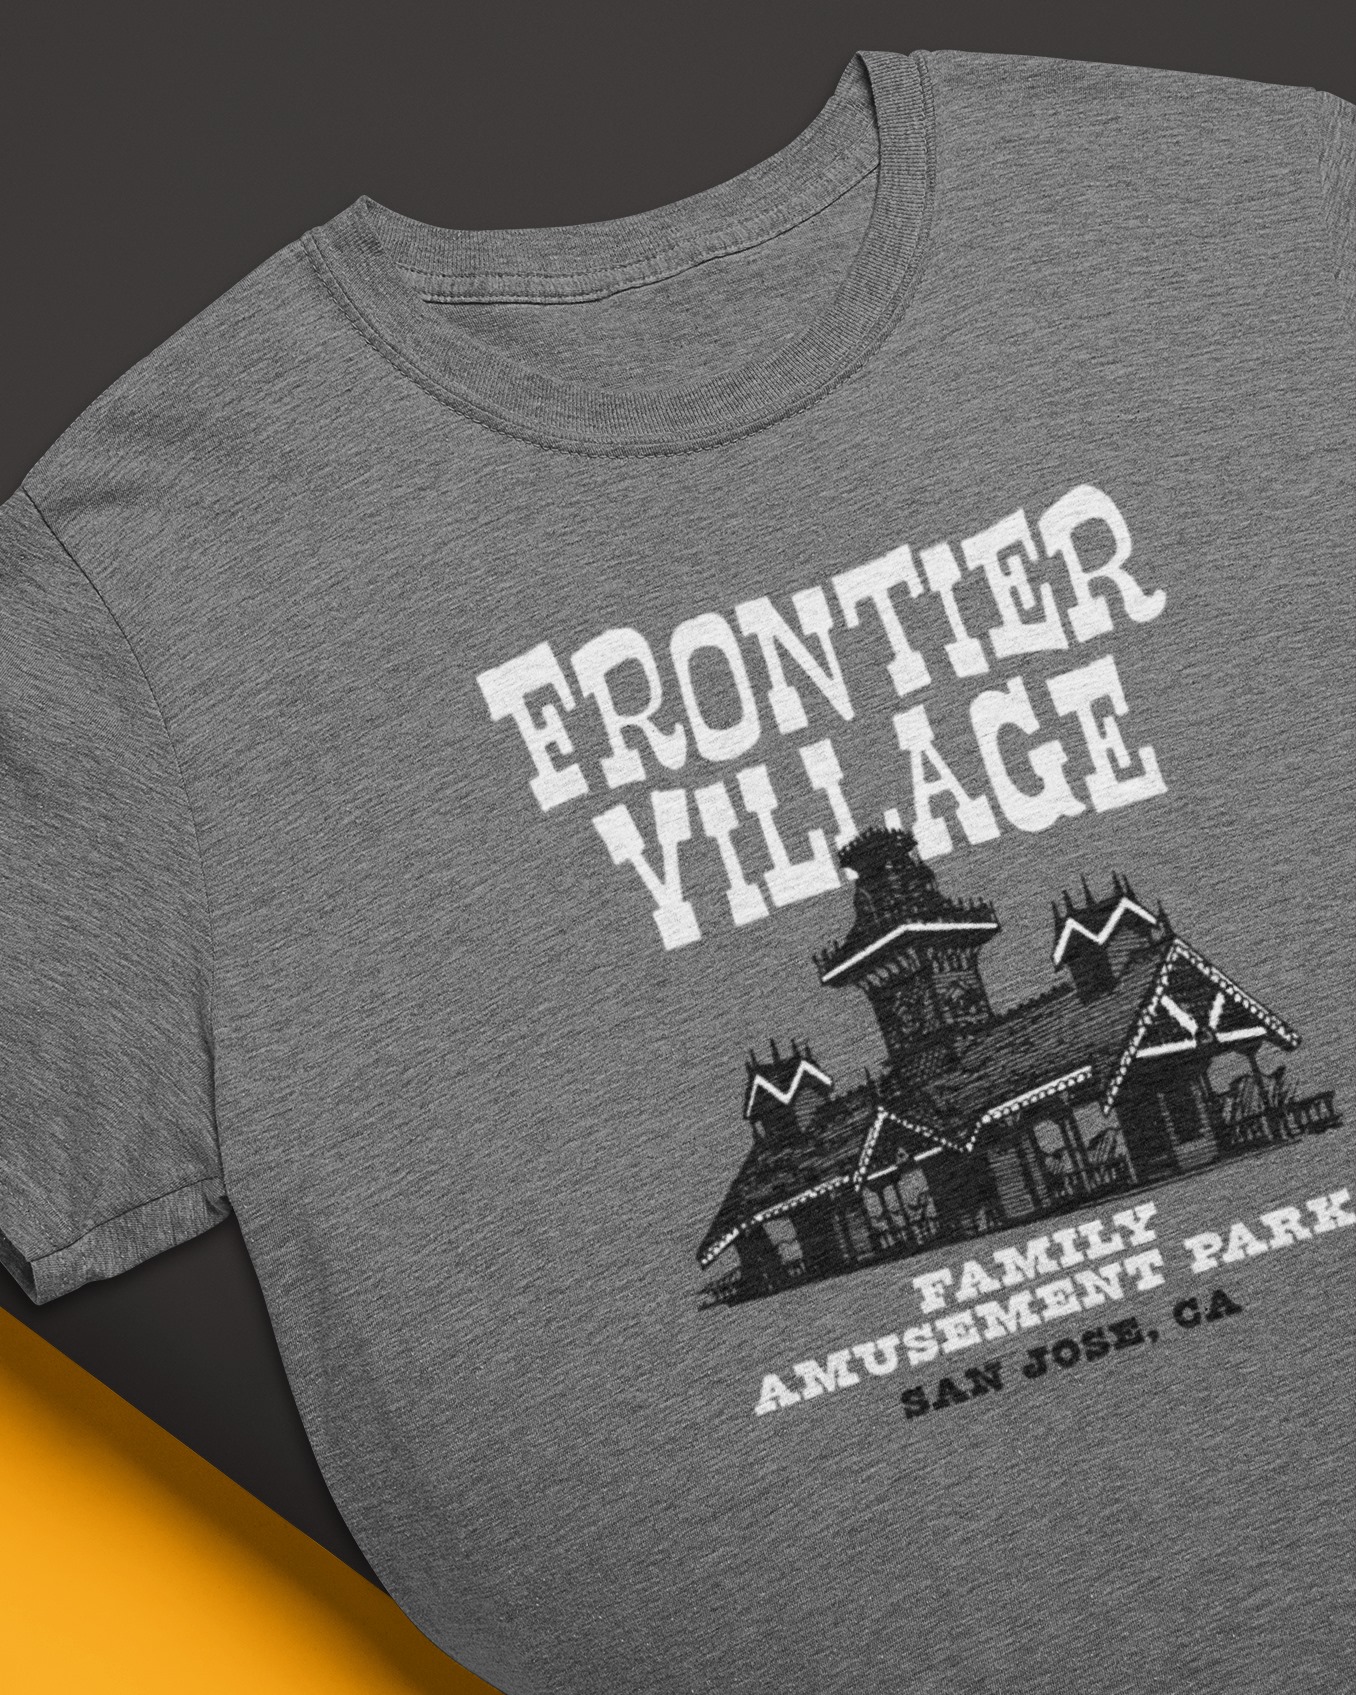 Frontier Village-Family Amusement Park